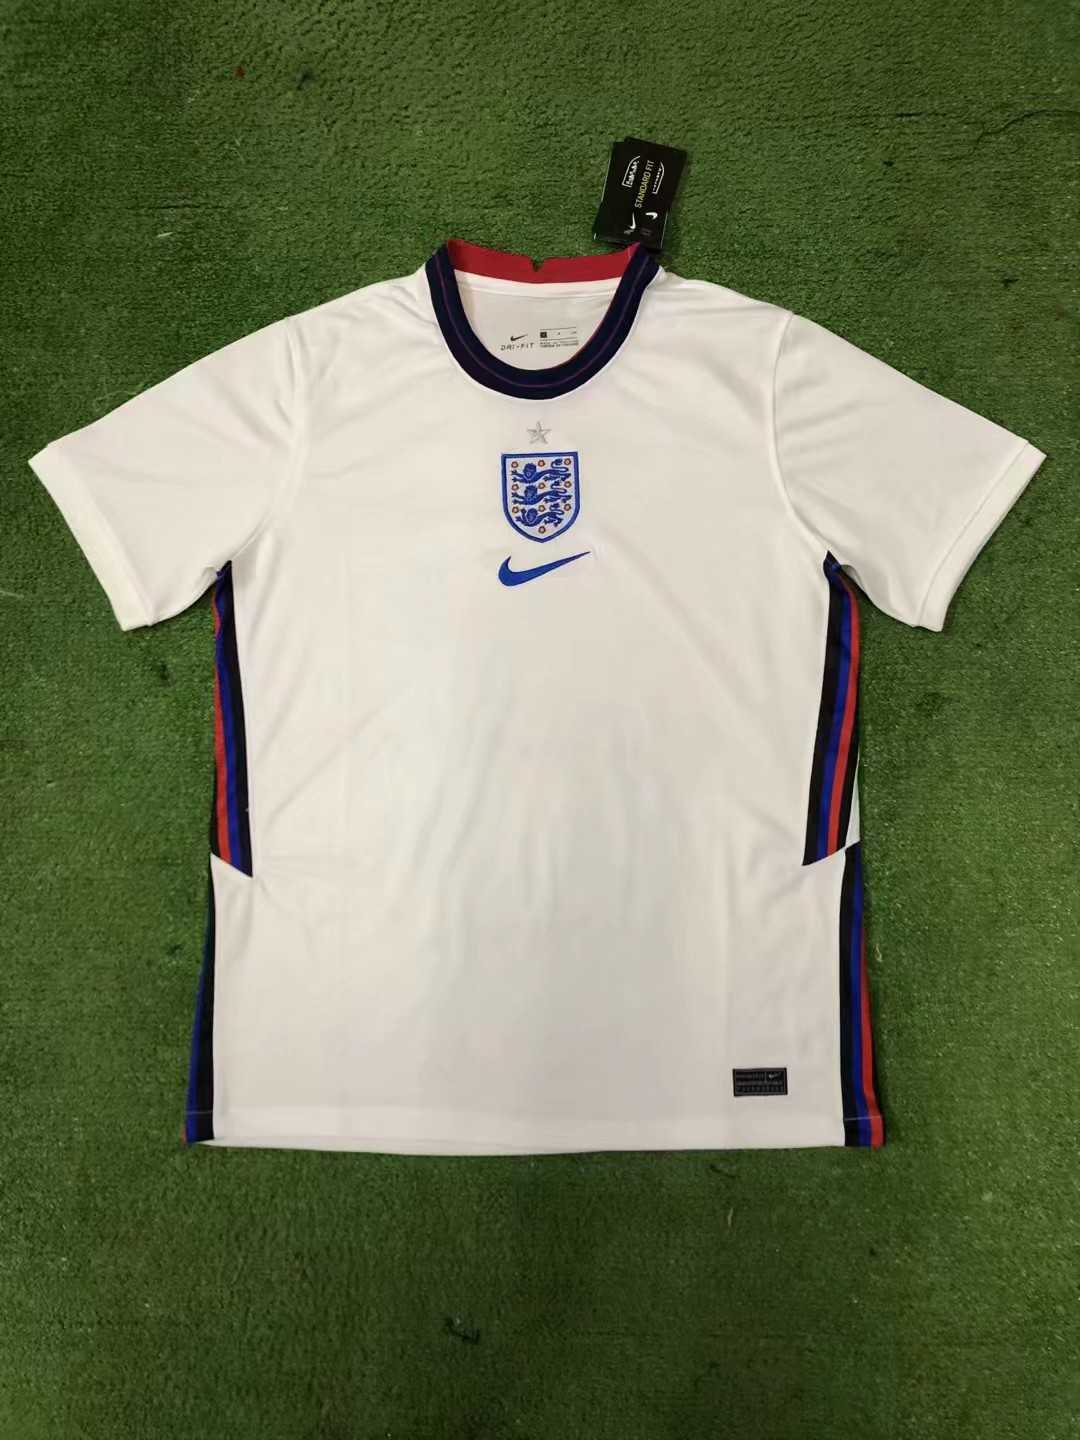 2020 England Home Mens Soccer Jersey Replica 